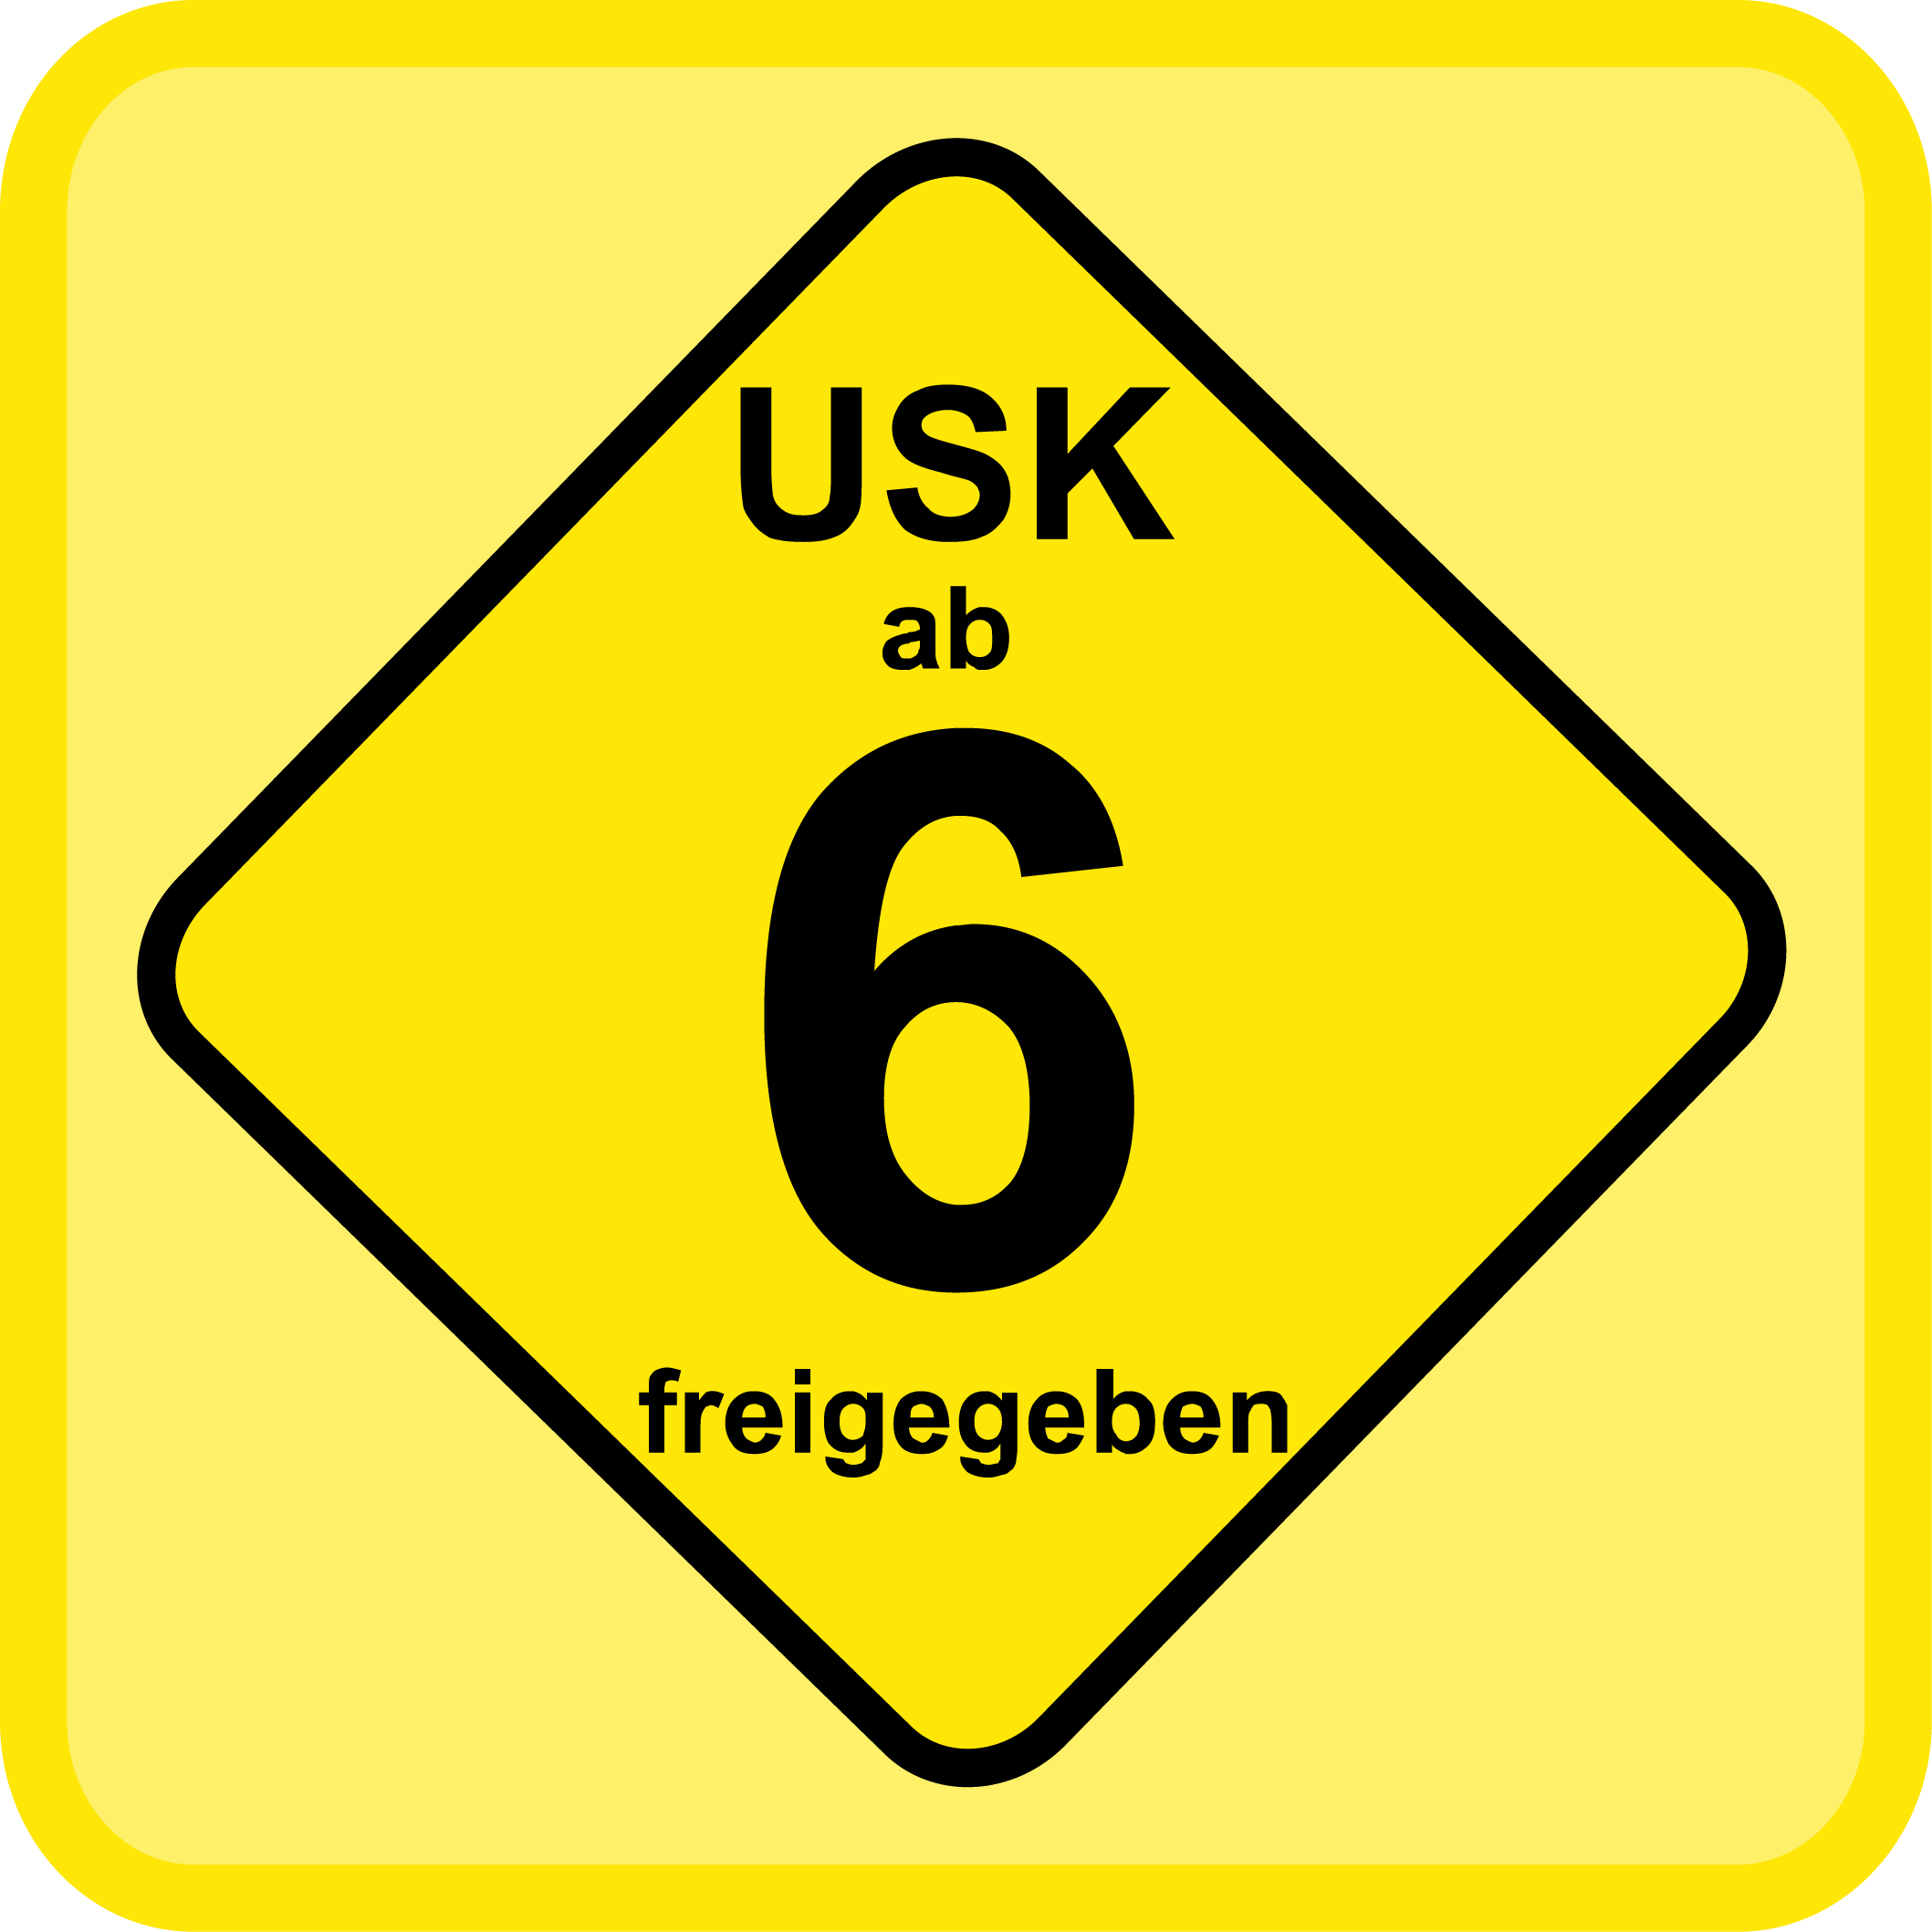 Usk6